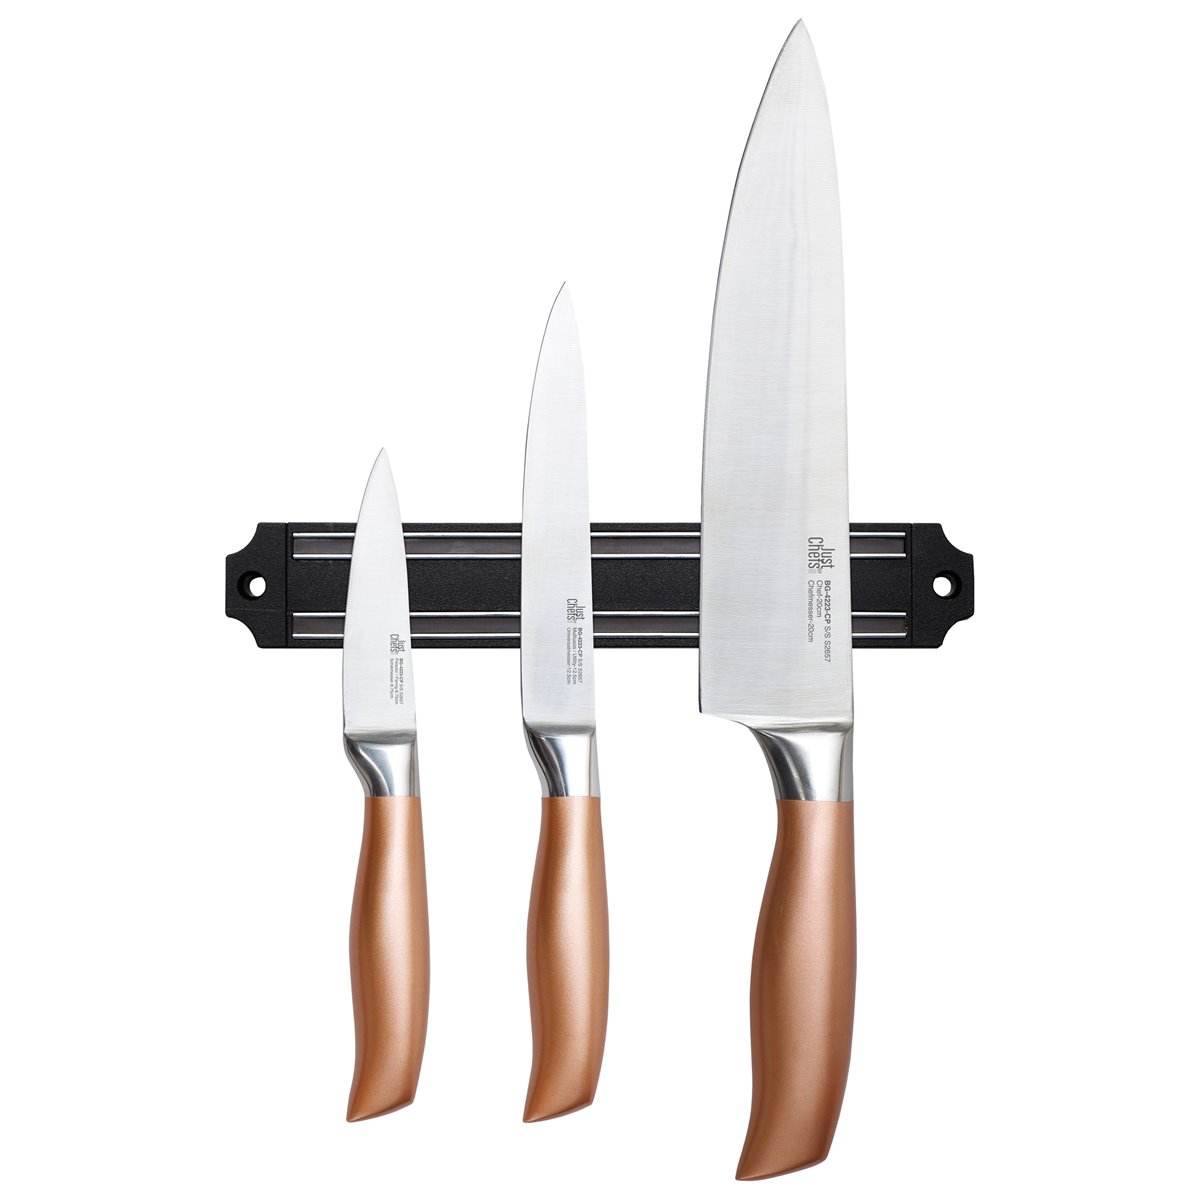 Bateria de cocina 8 piezas apta para induccion SAN IGNACIO Hita en acero  inoxidable con set de 3 cuchillos en acero inoxidable con barra magnetica